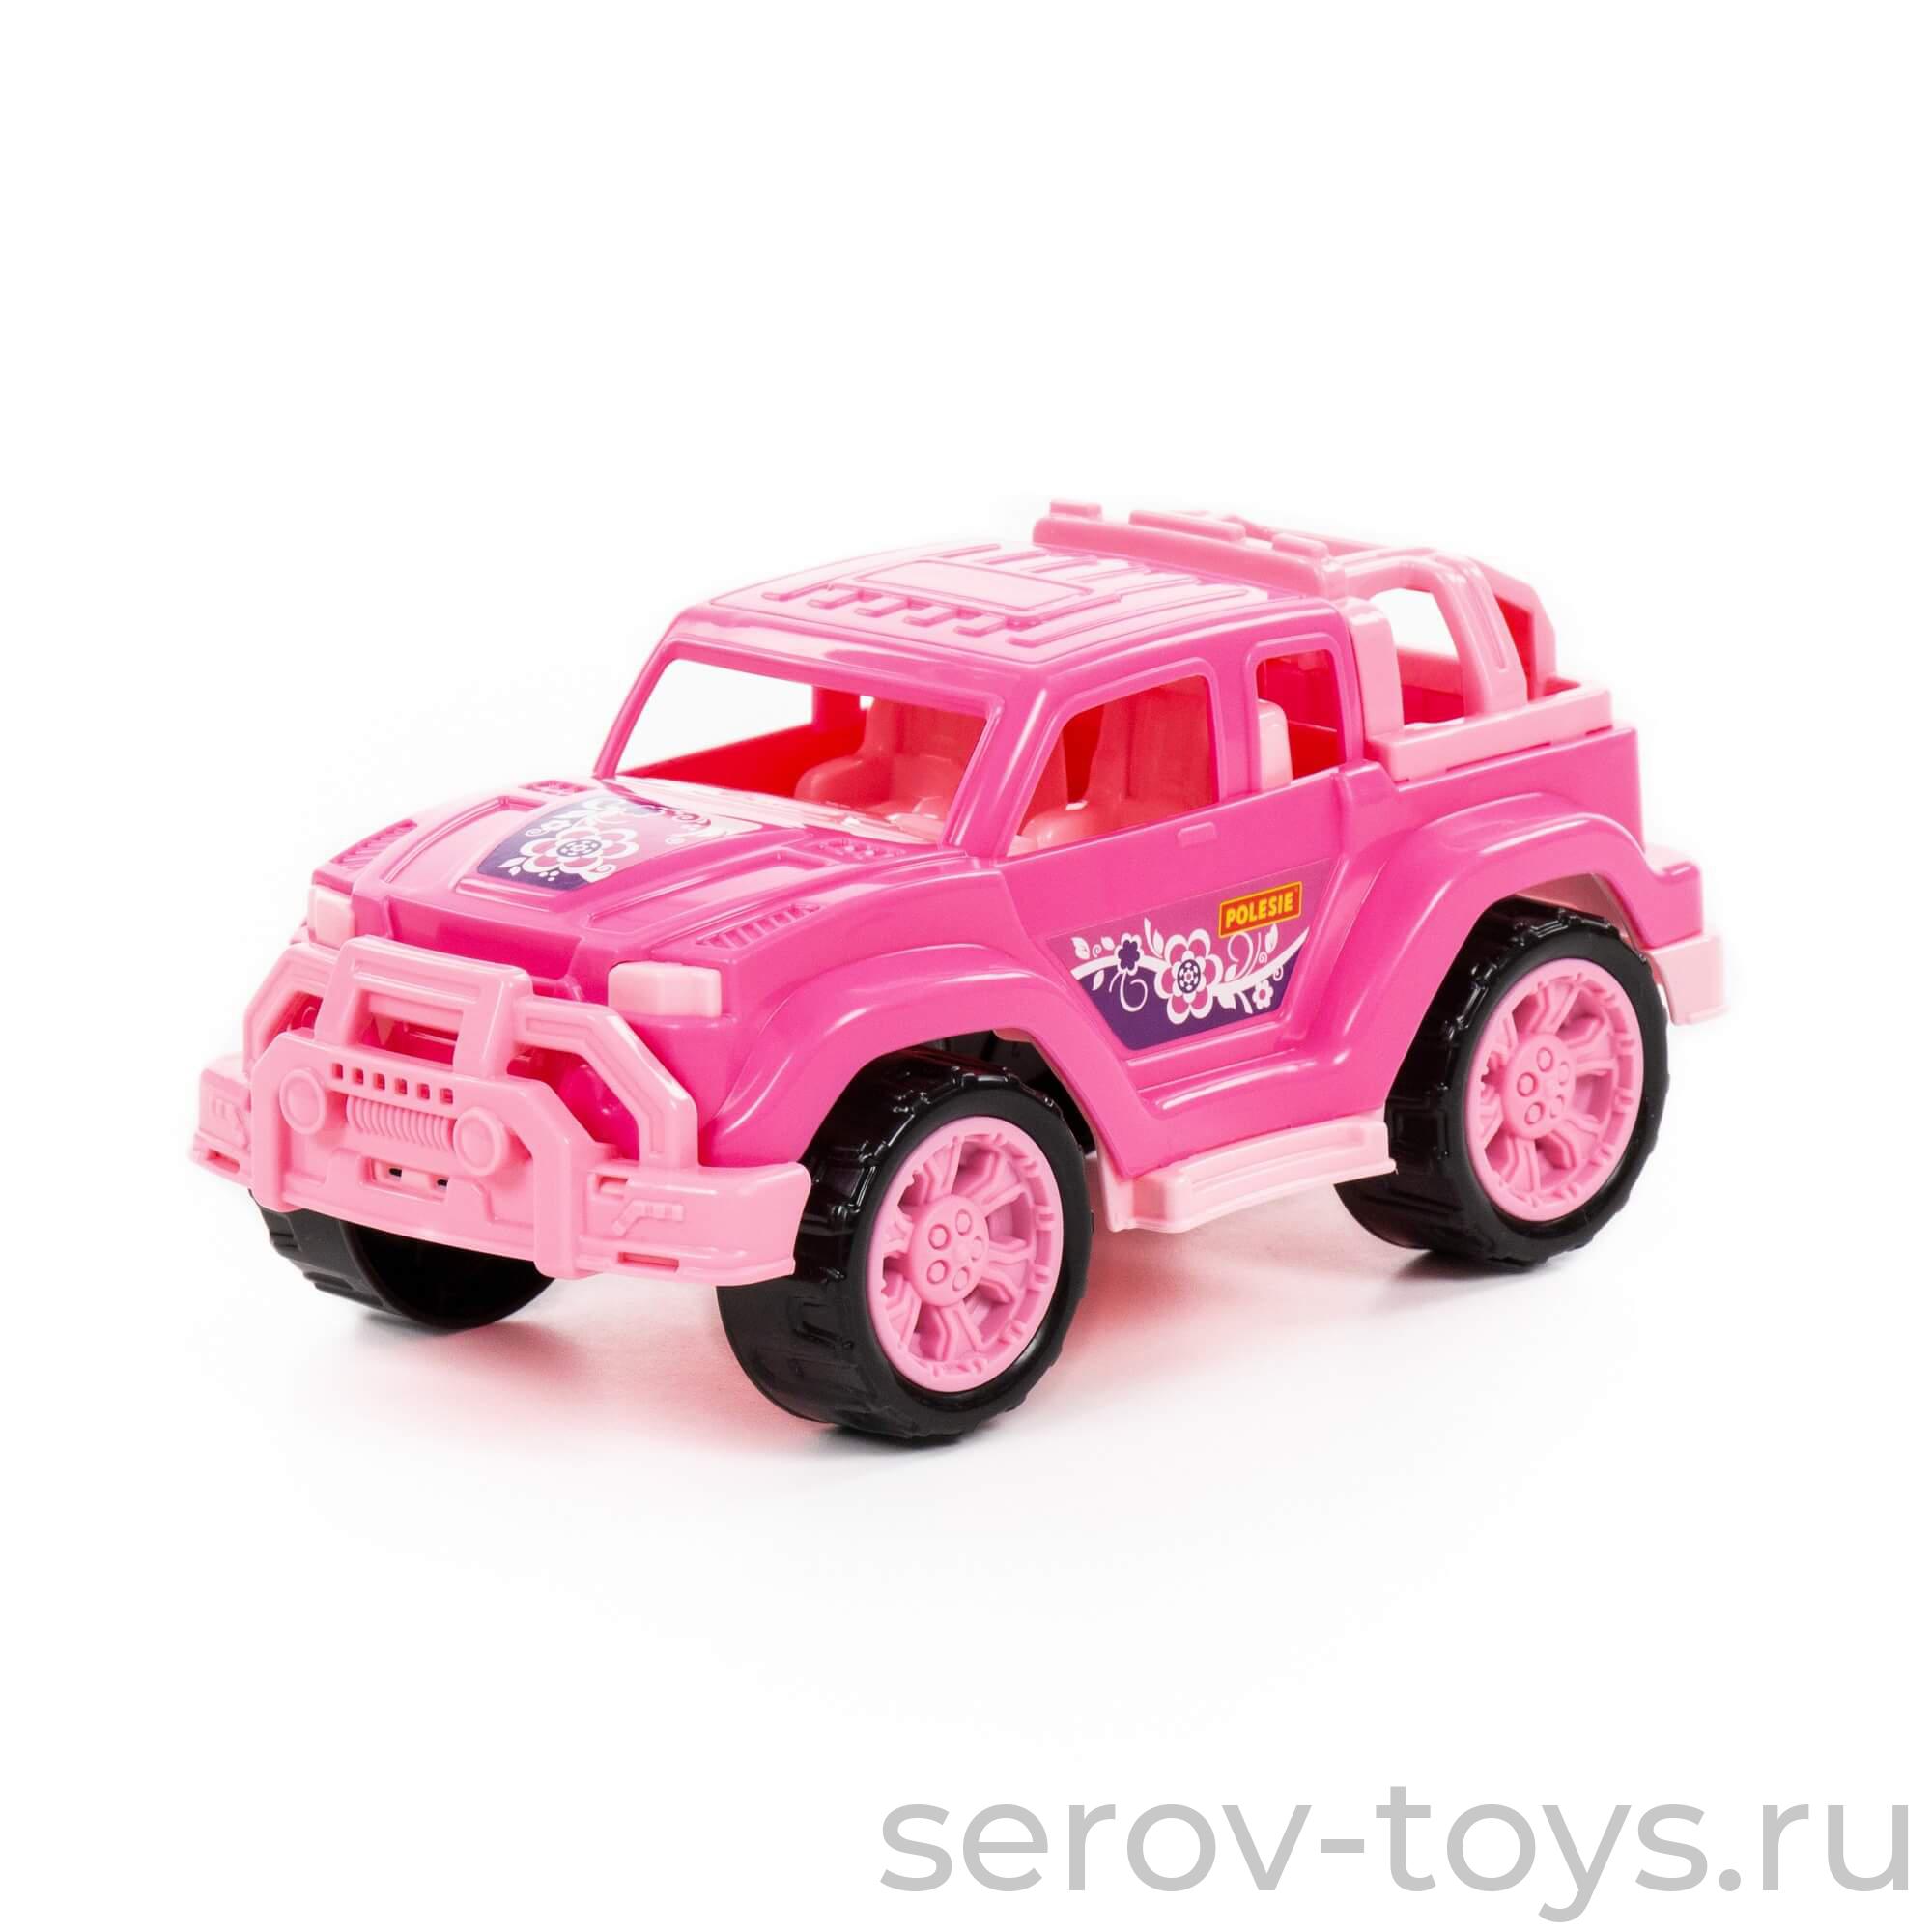 Автомобиль Легионер мини 84699 Розовый в сетке